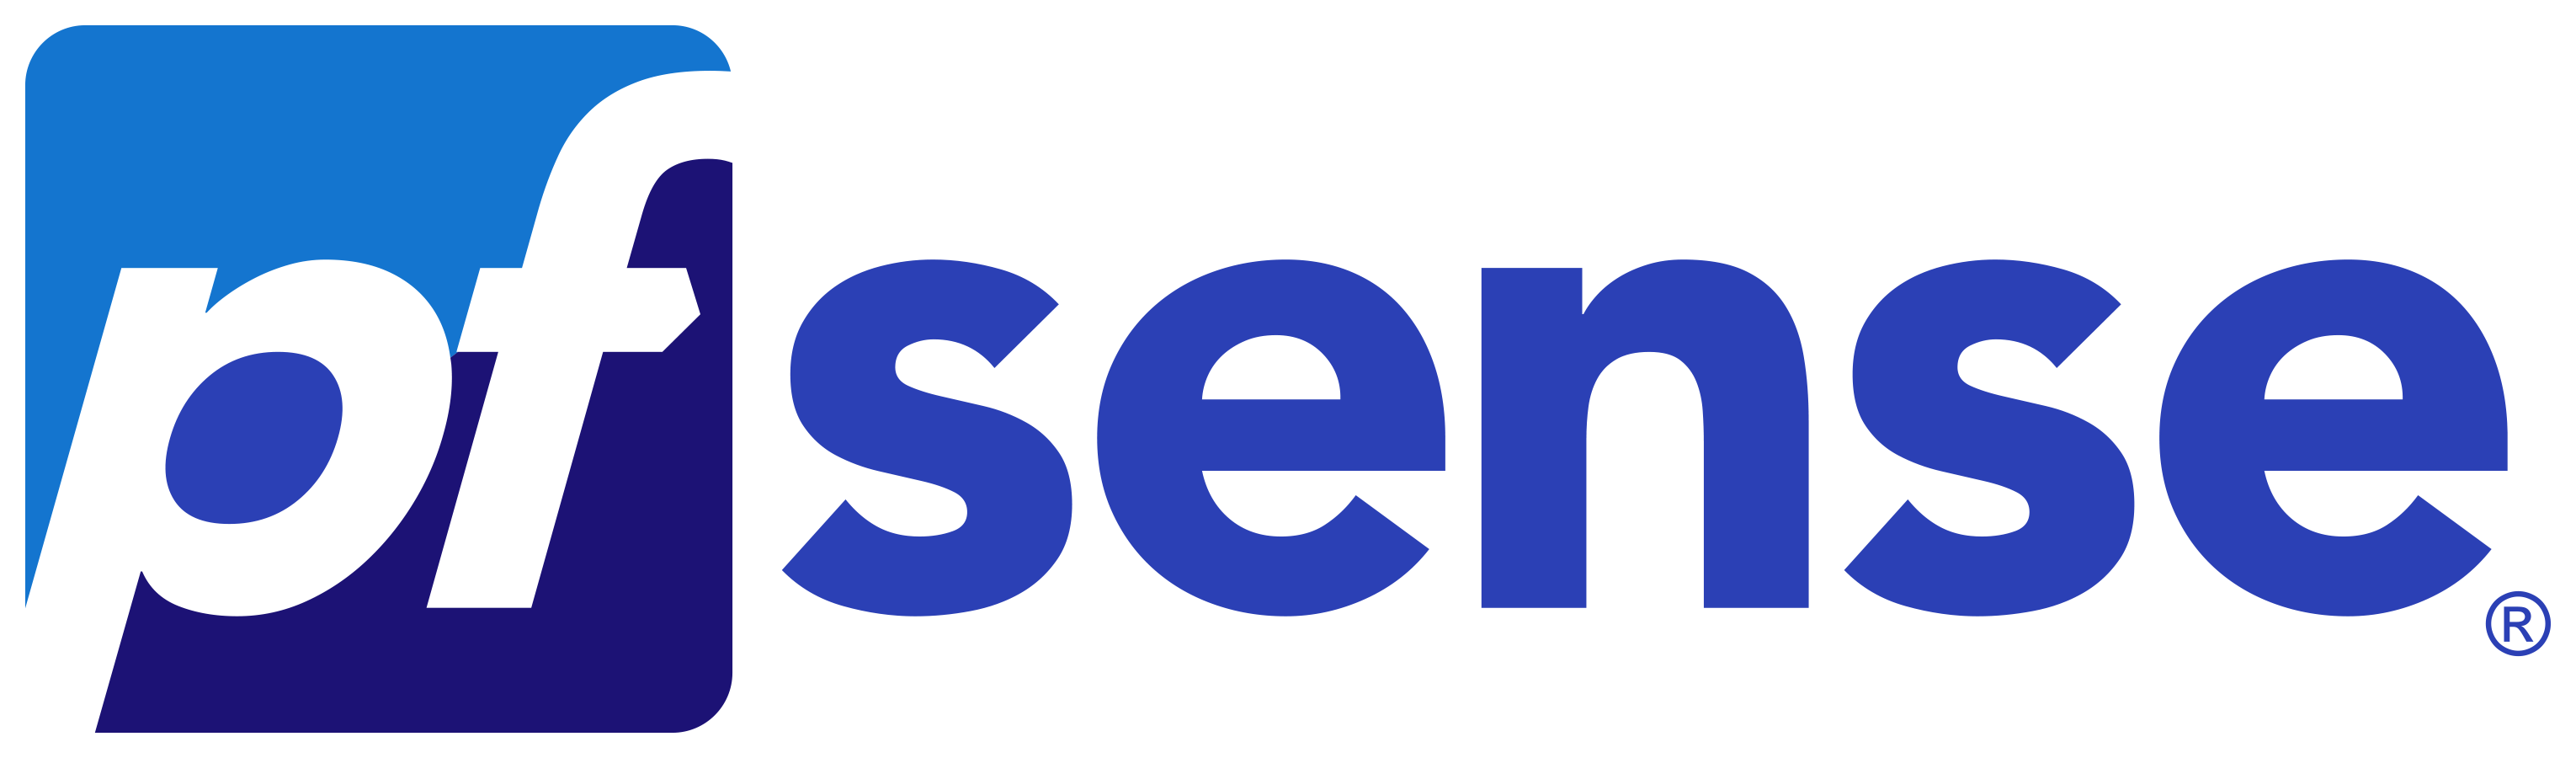 https://upload.wikimedia.org/wikipedia/commons/b/b9/PfSense_logo.png